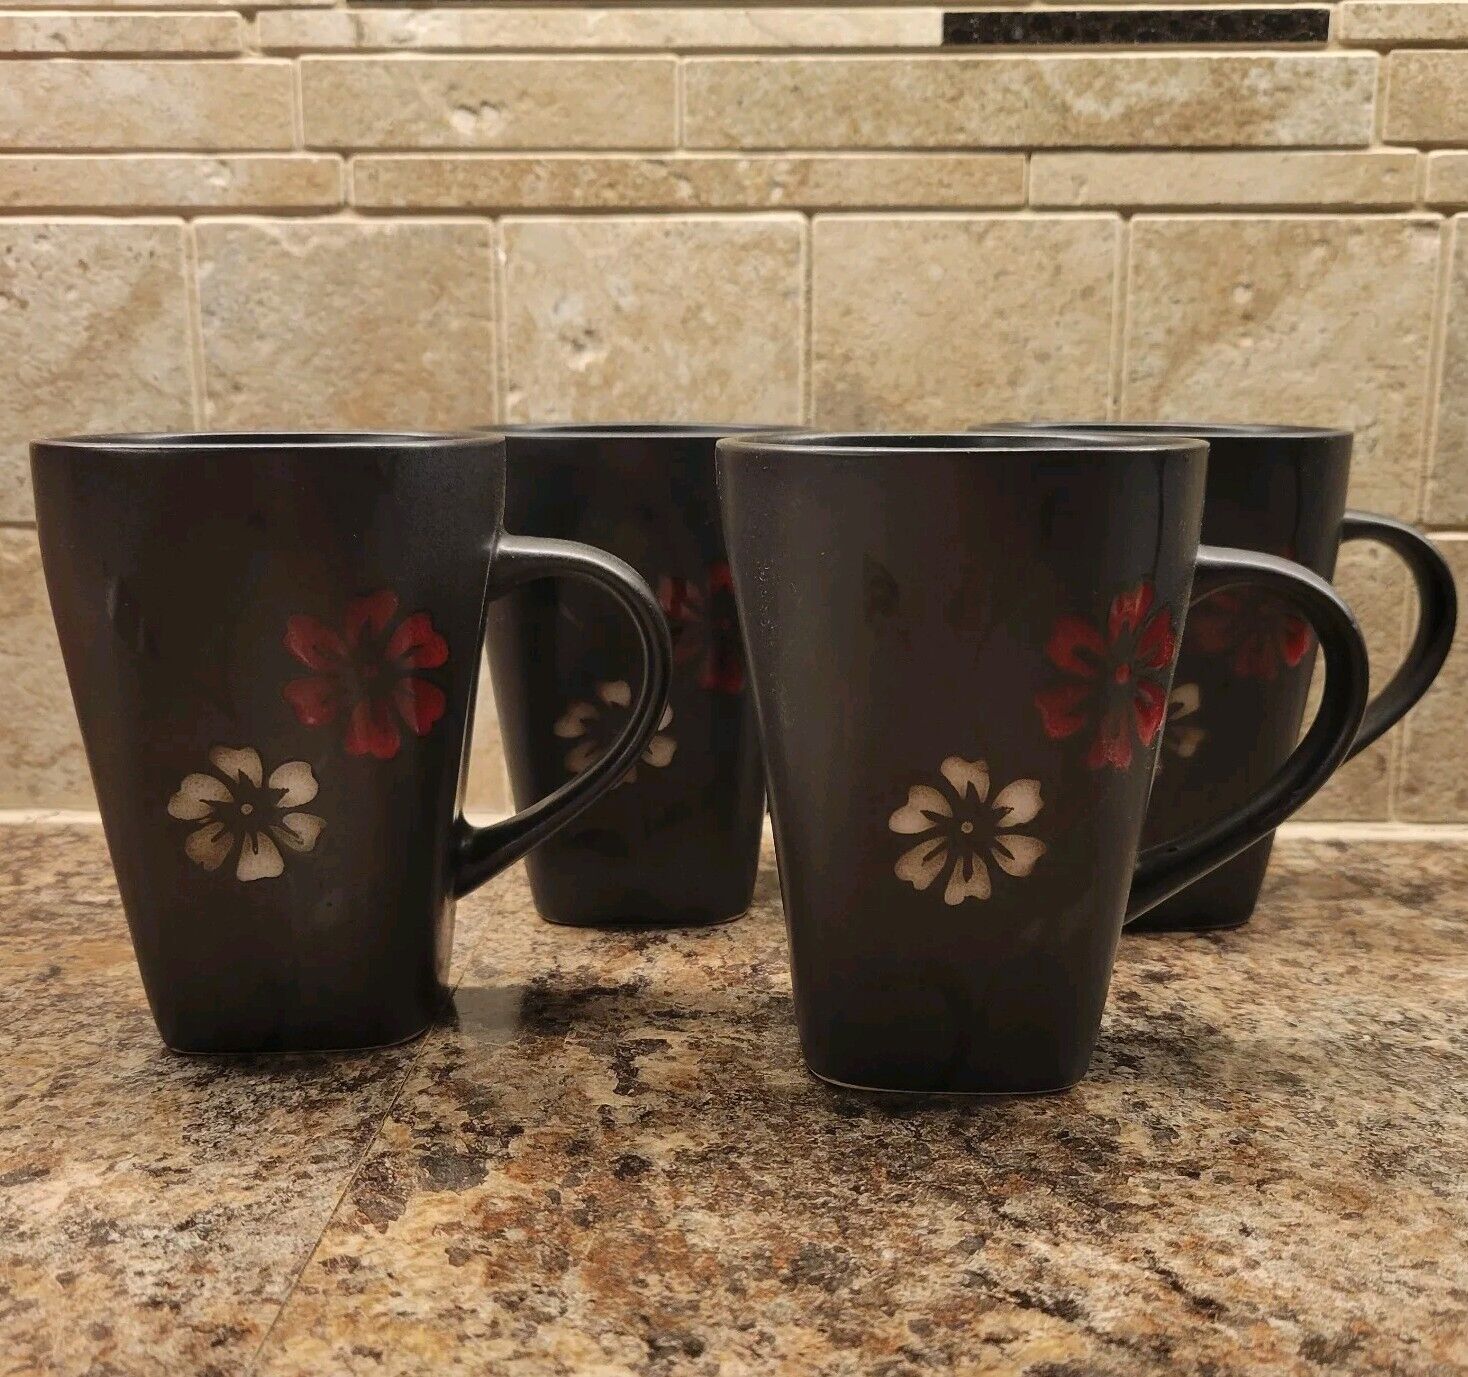 Gibson Elite Mugs “Evening Blossom” Black w/red & white flower, set of 4